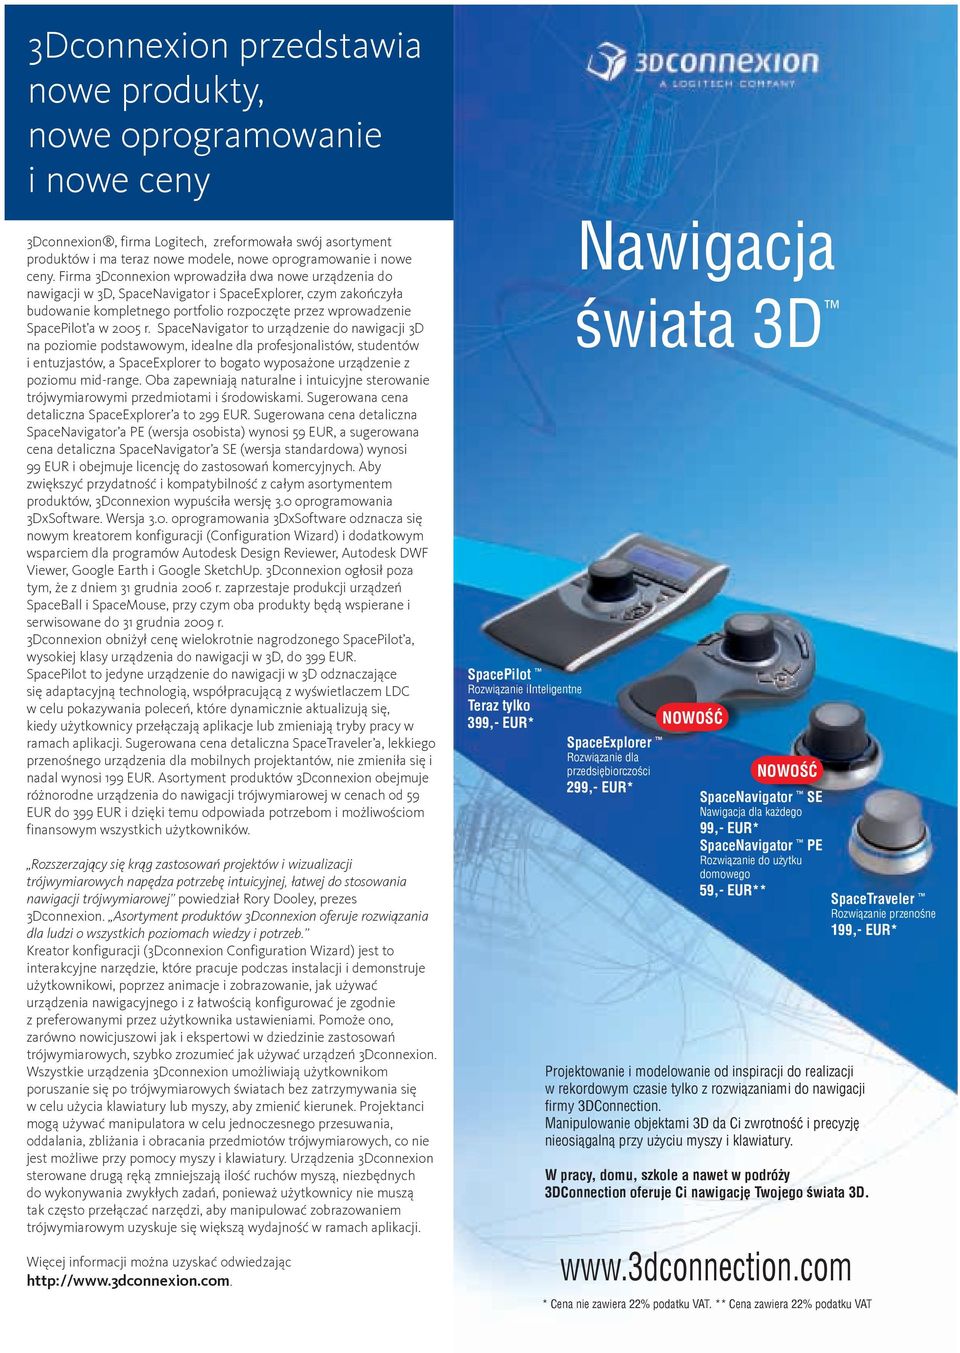 r. SpaceNavigator to urządzenie do nawigacji 3D na poziomie podstawowym, idealne dla profesjonalistów, studentów i entuzjastów, a SpaceExplorer to bogato wyposażone urządzenie z poziomu mid-range.